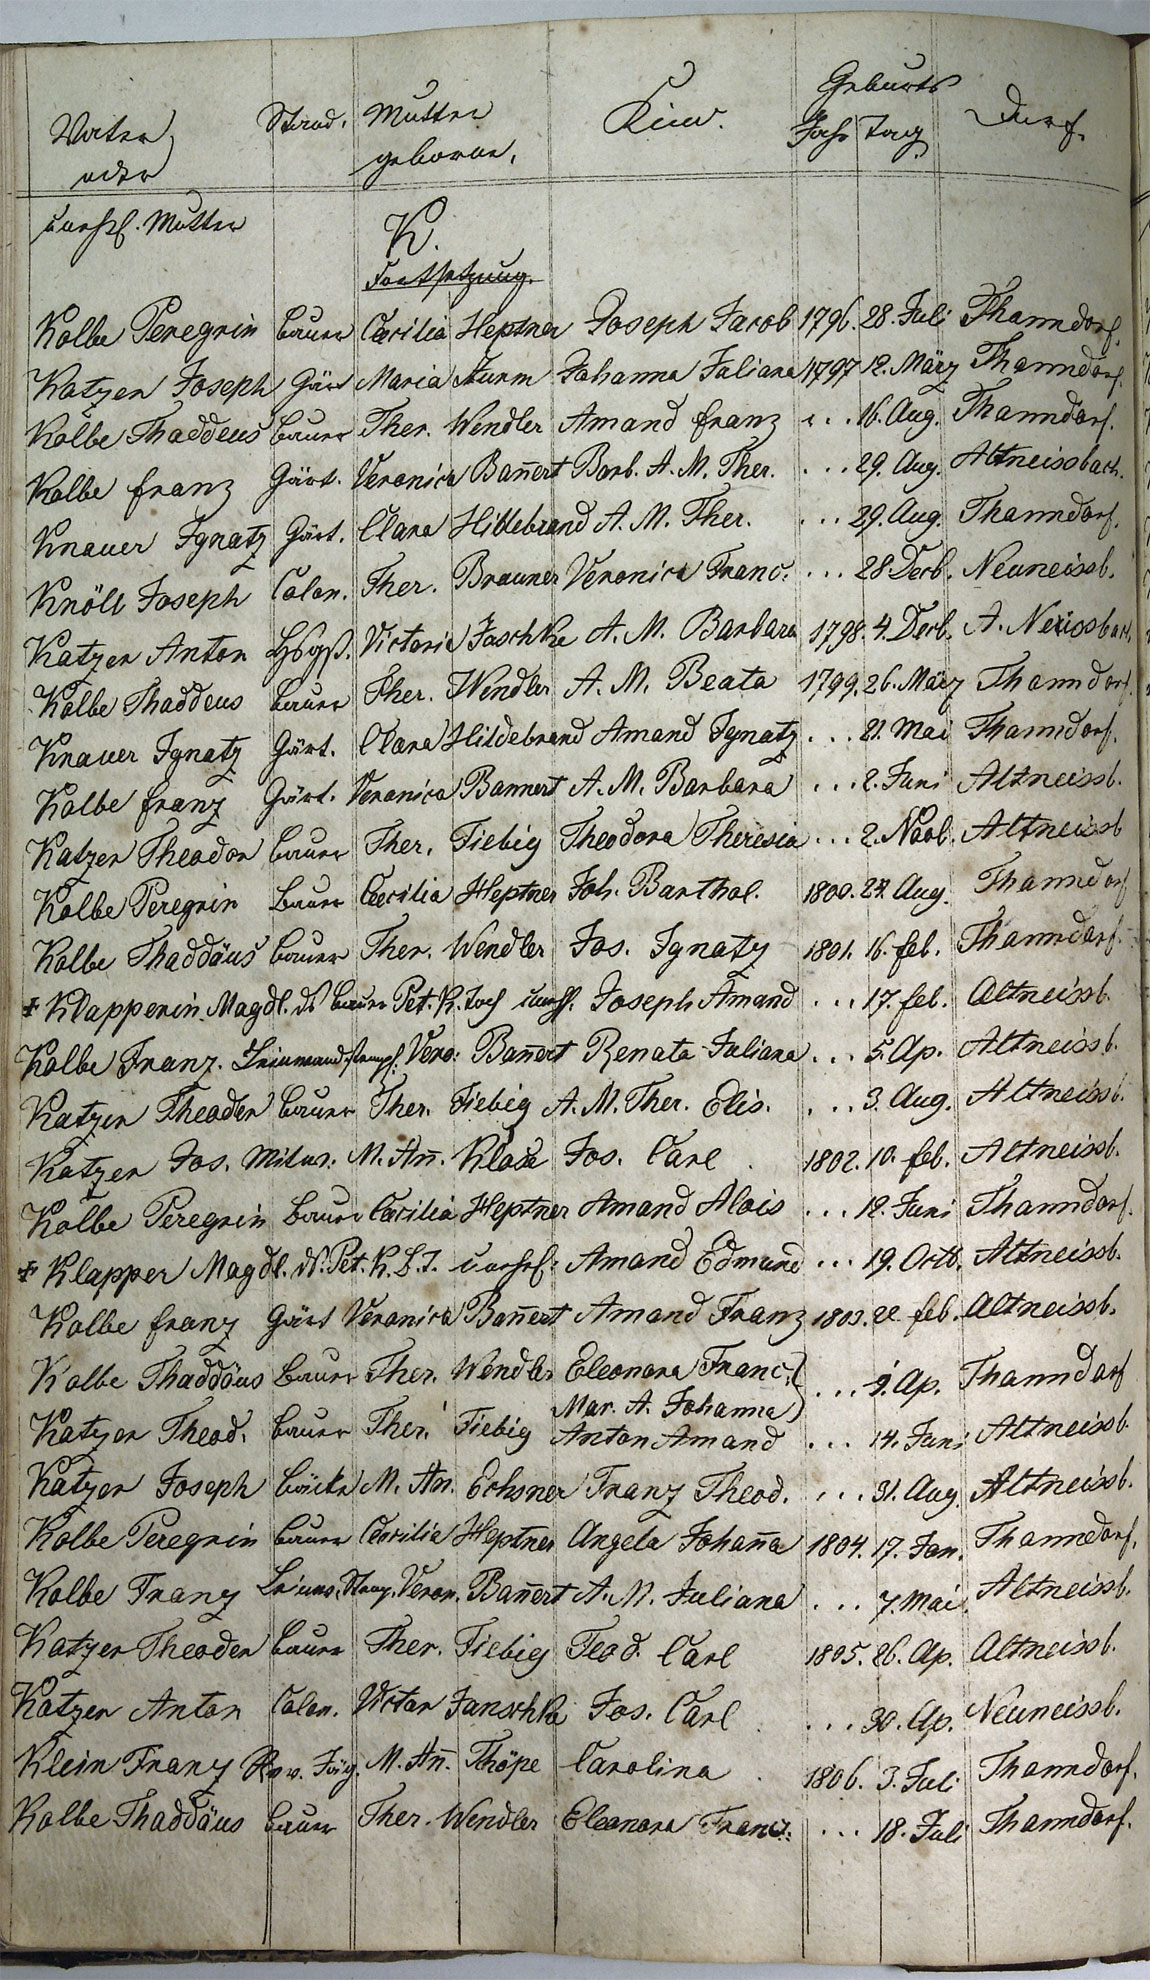 Taufregister 1770 - 1889 Seite 76